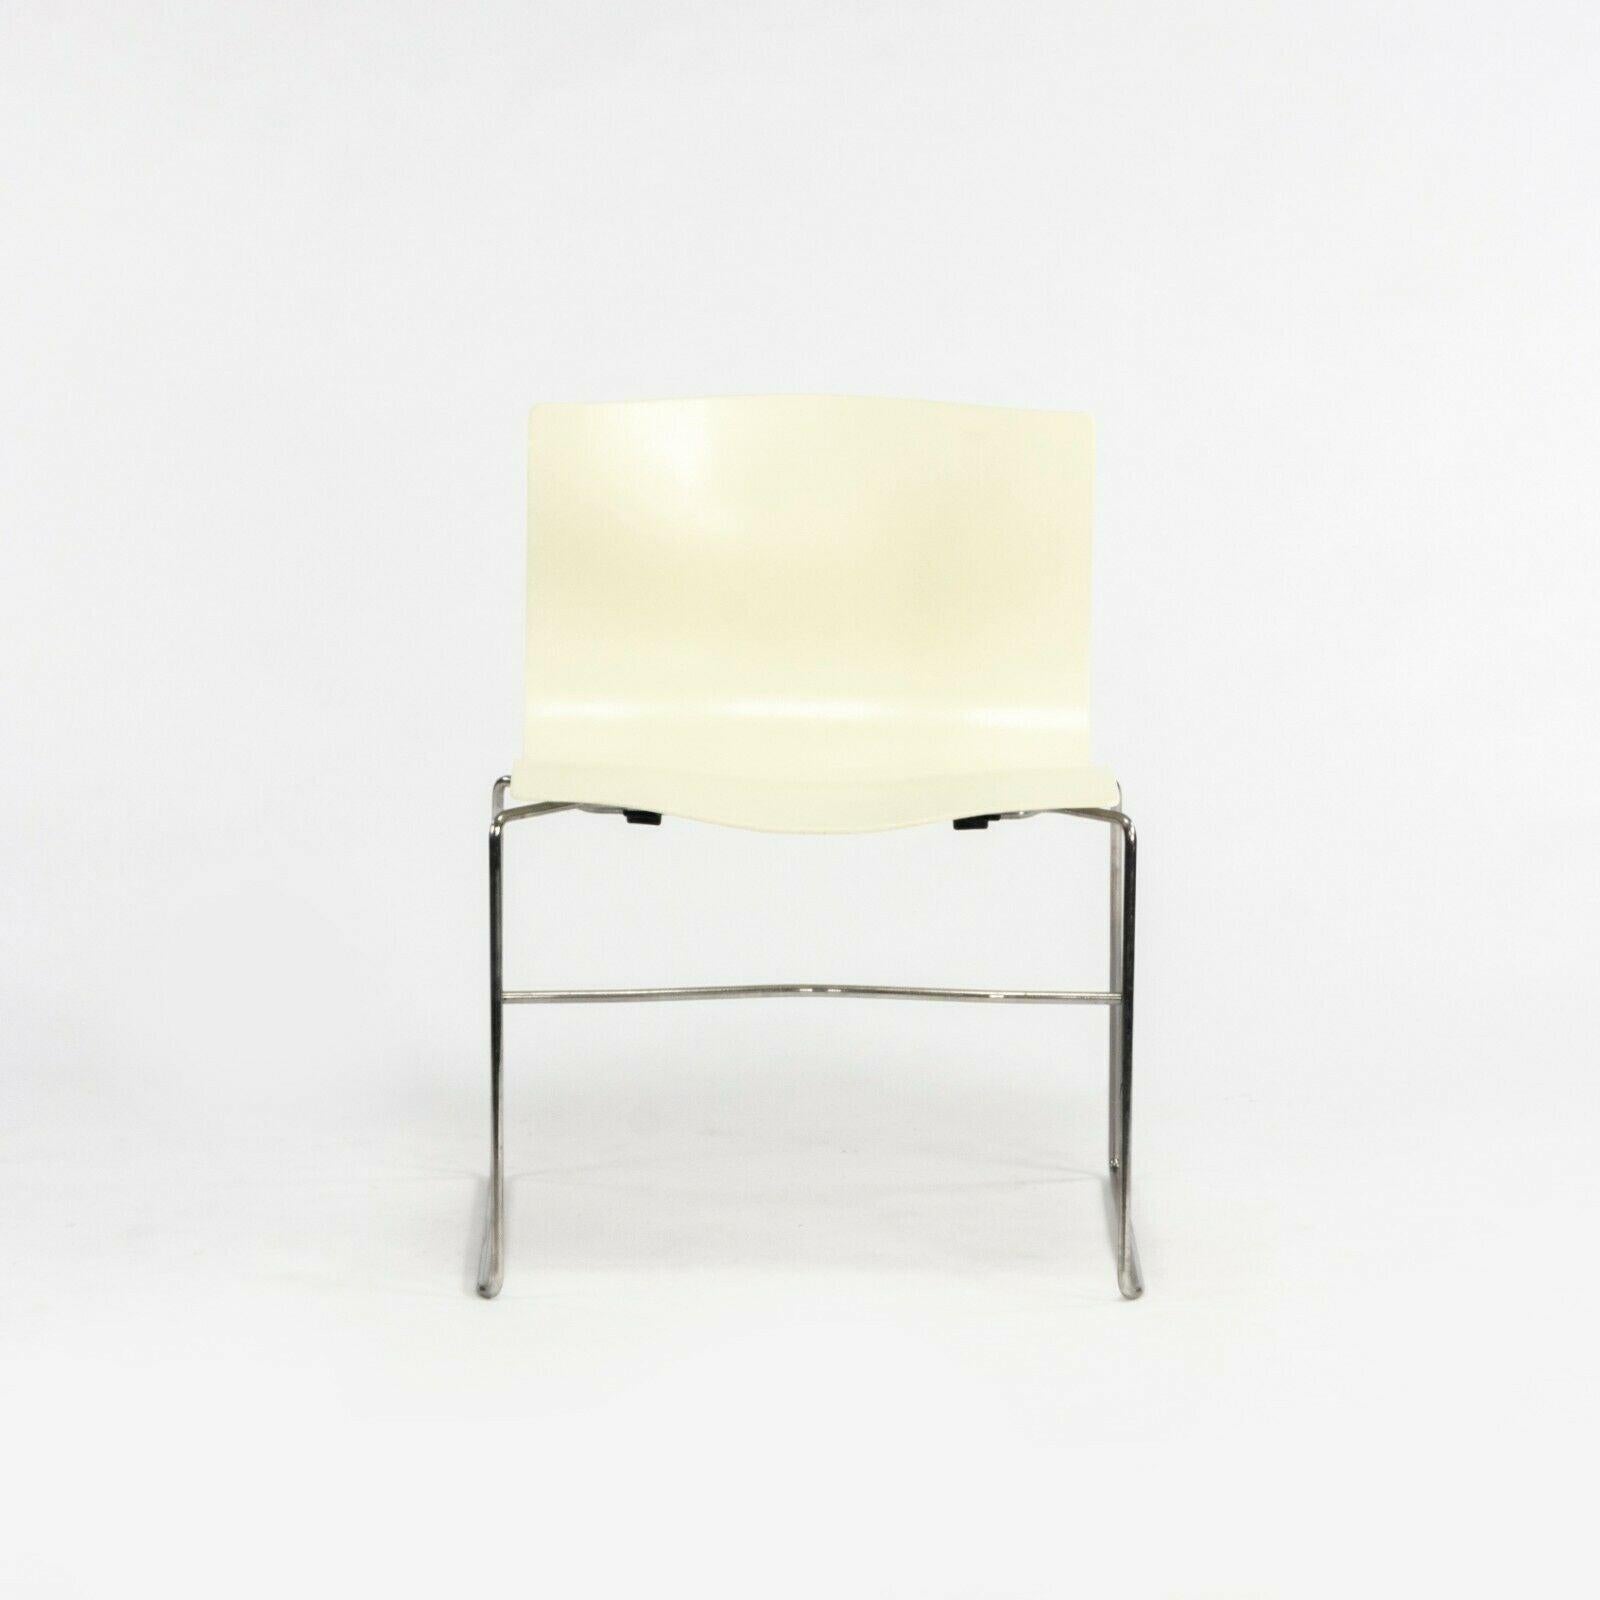 La chaise empilable Knoll Handkerchief, conçue par Lella et Massimo Vignelli, est proposée à la vente en un seul exemplaire (plusieurs sont disponibles, mais vendus séparément). Le duo compte parmi les designers les plus influents du XXe siècle et